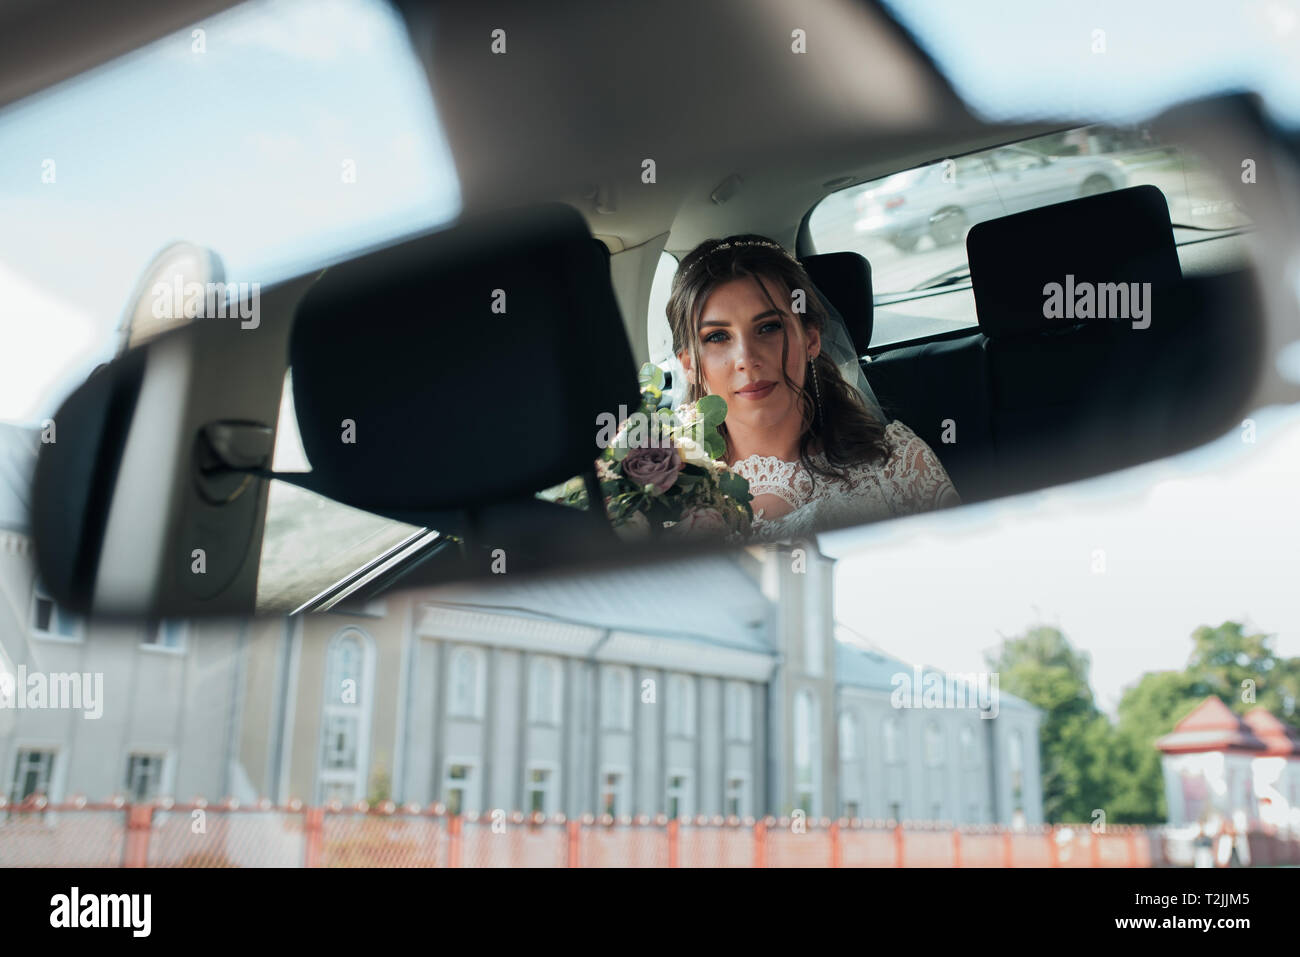 Водитель смотрит в зеркало. Глаза девушки в зеркале машины. Отражение в зеркале машины девушки.